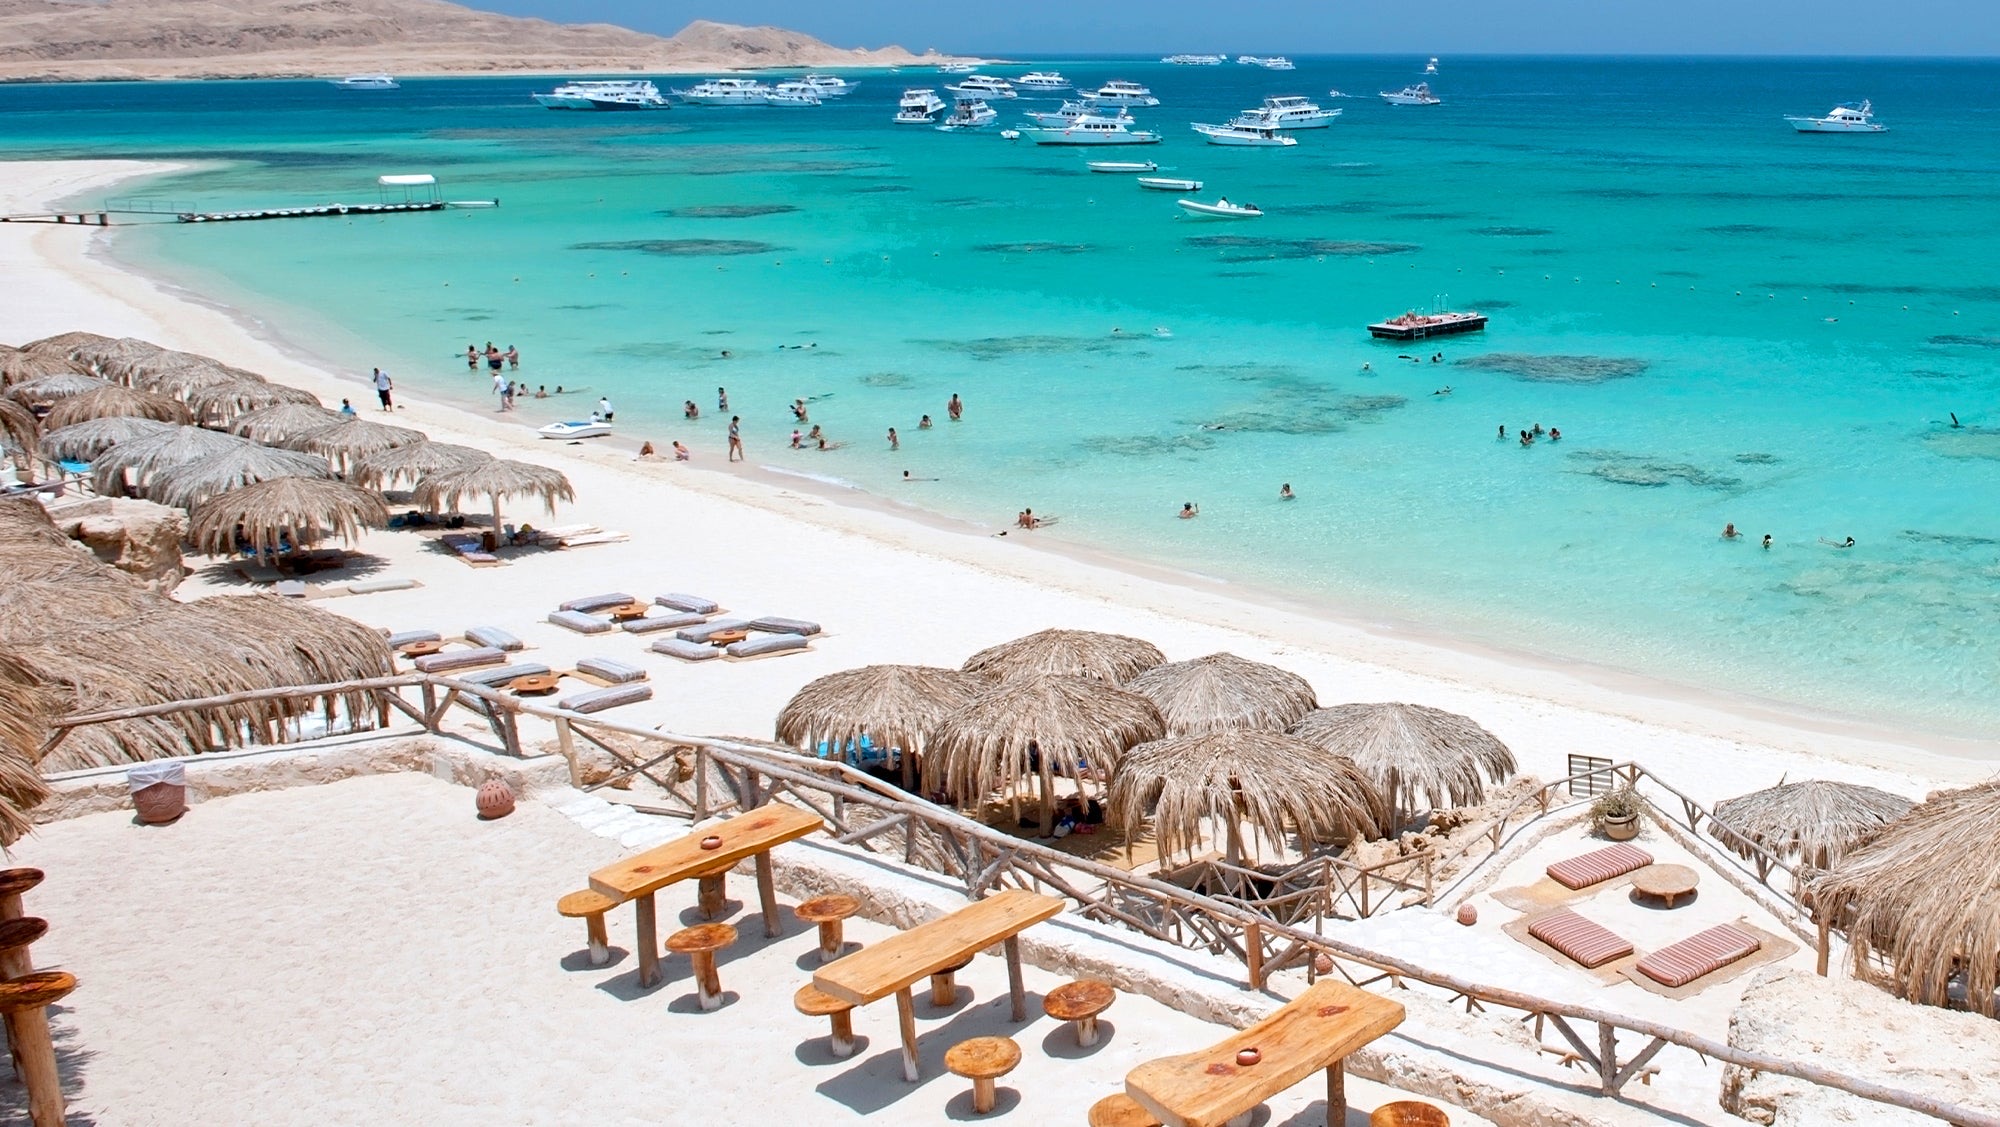 Cât cheltui într-o săptămână în Hurghada, Egipt? Cazare, safari, scufundări incluse